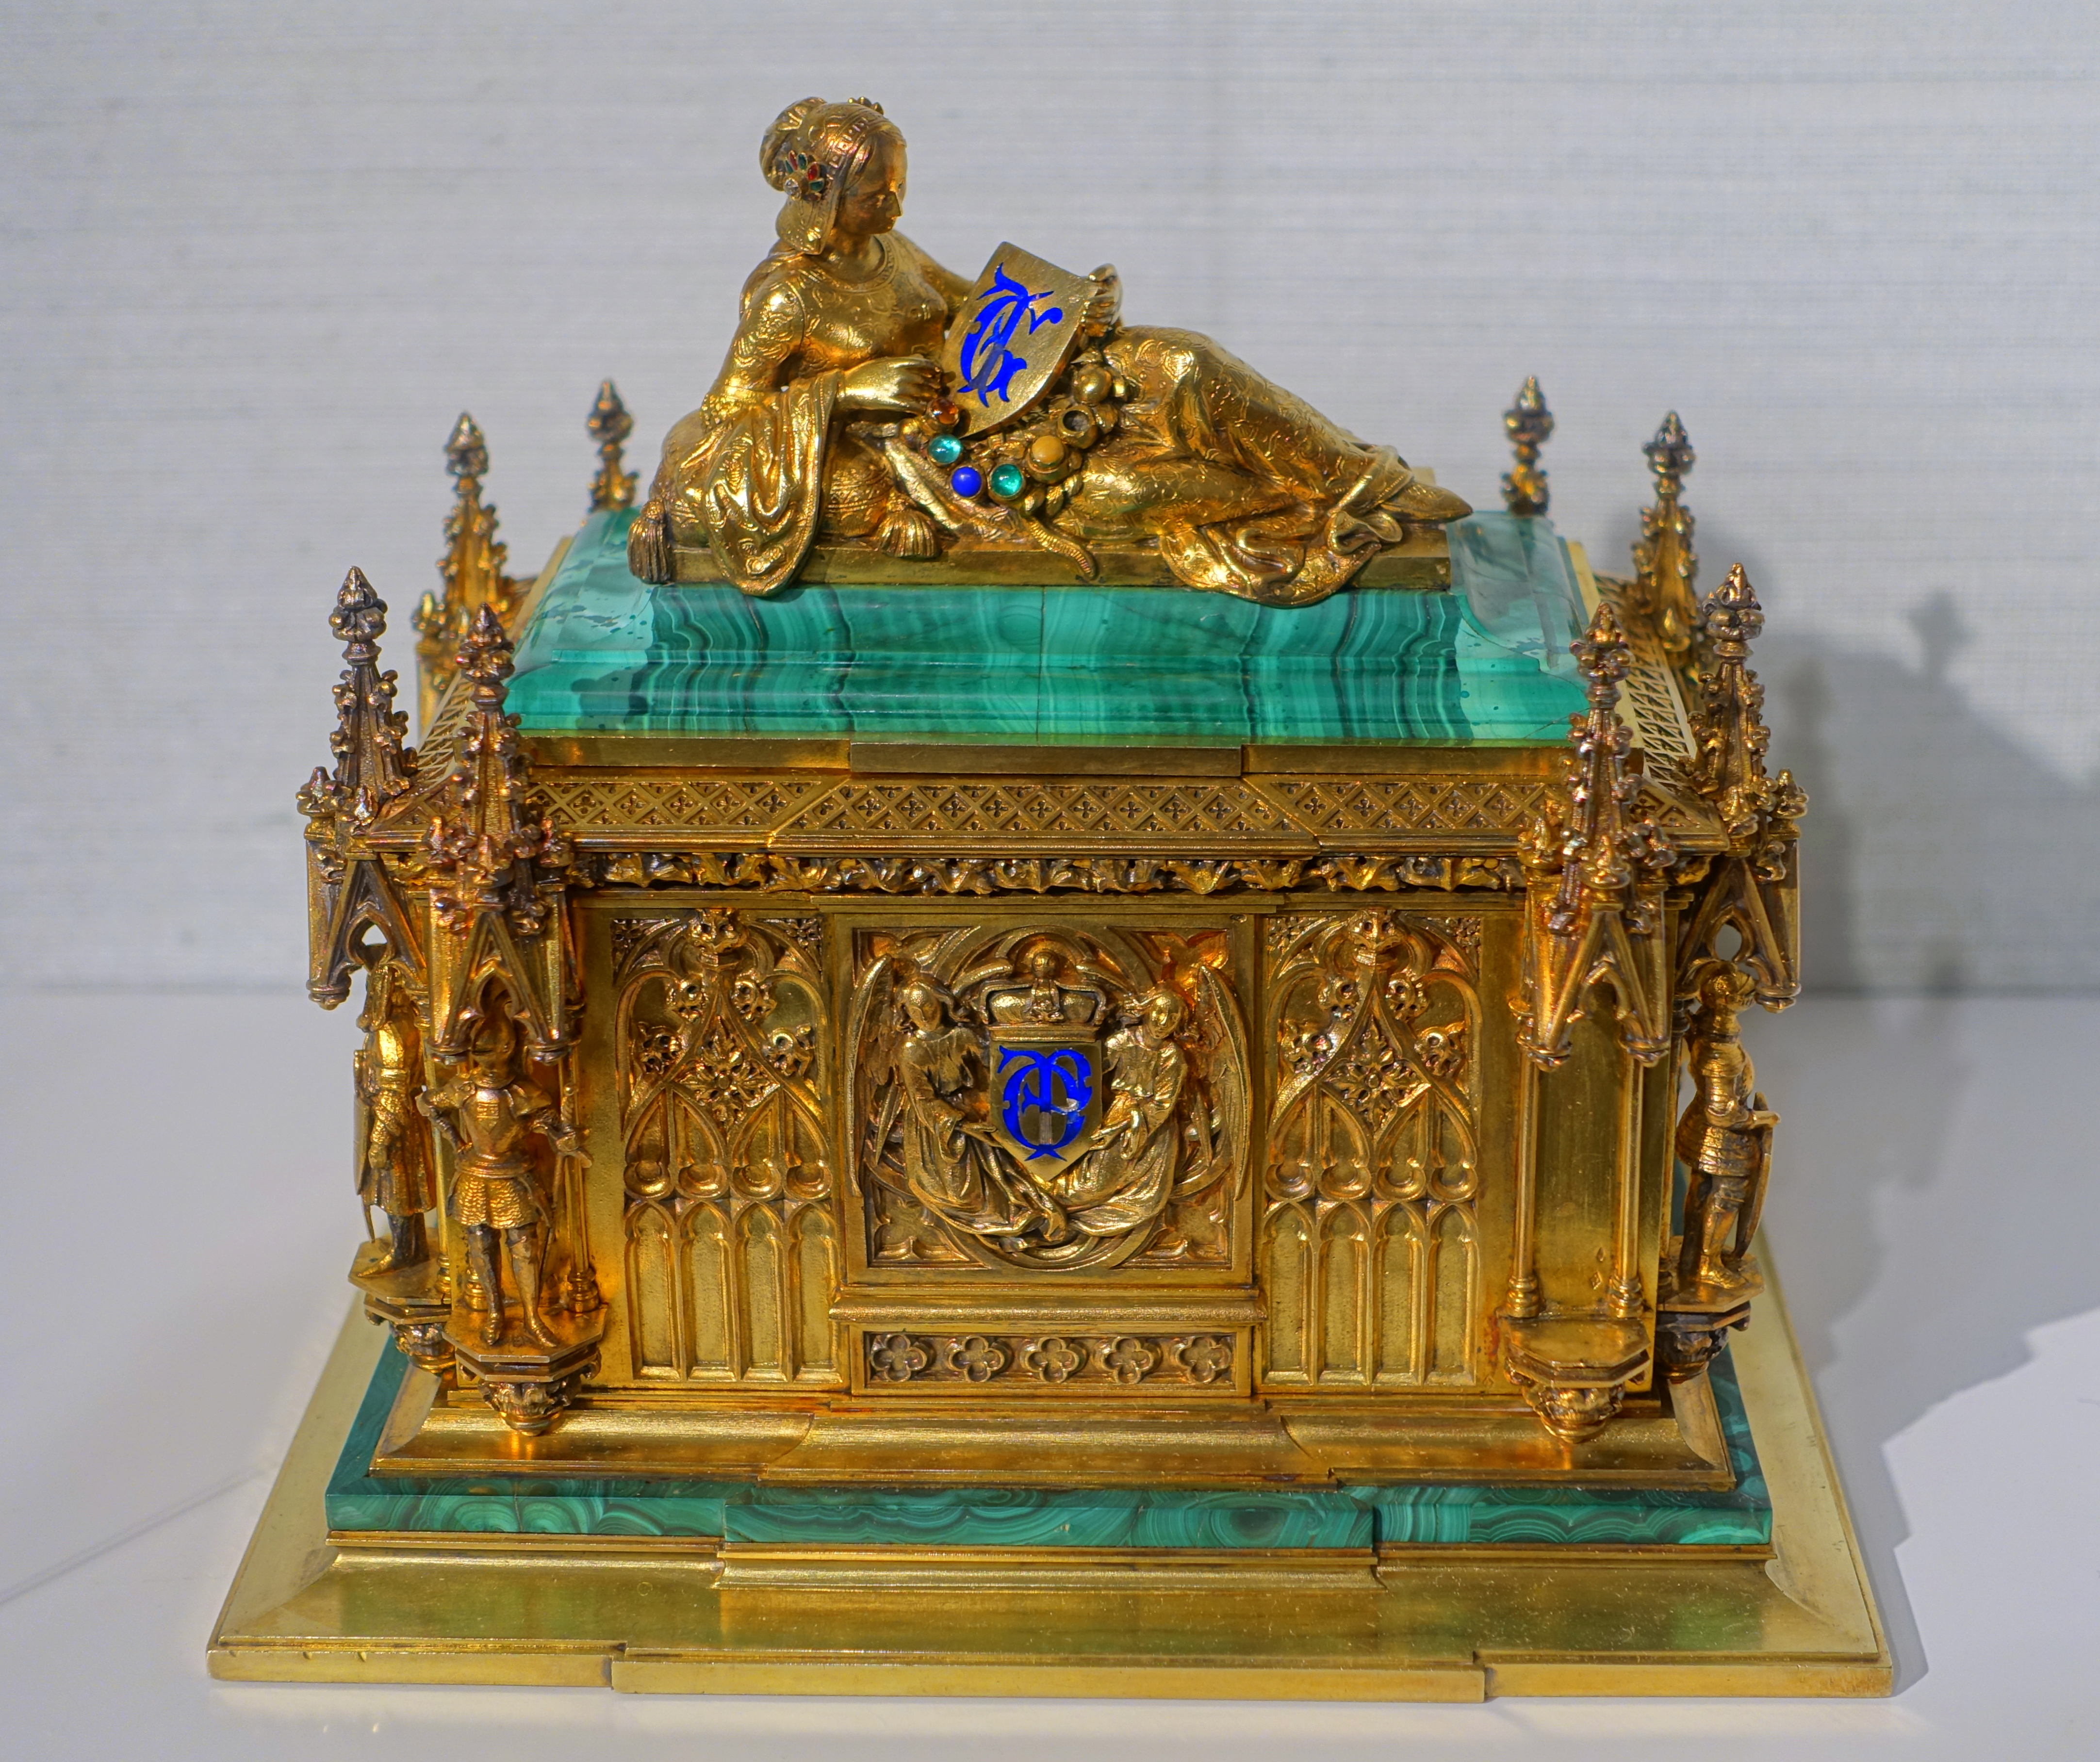 Ceremonial box for the wedding of Helene von Mecklenburg to Prince Ferdinand Philippe, Fossin & Fils, Paris, 1837, gilt silver, malachite, enamel - Hessisches Landesmuseum Darmstadt - Darmstadt, Germany - DSC01066